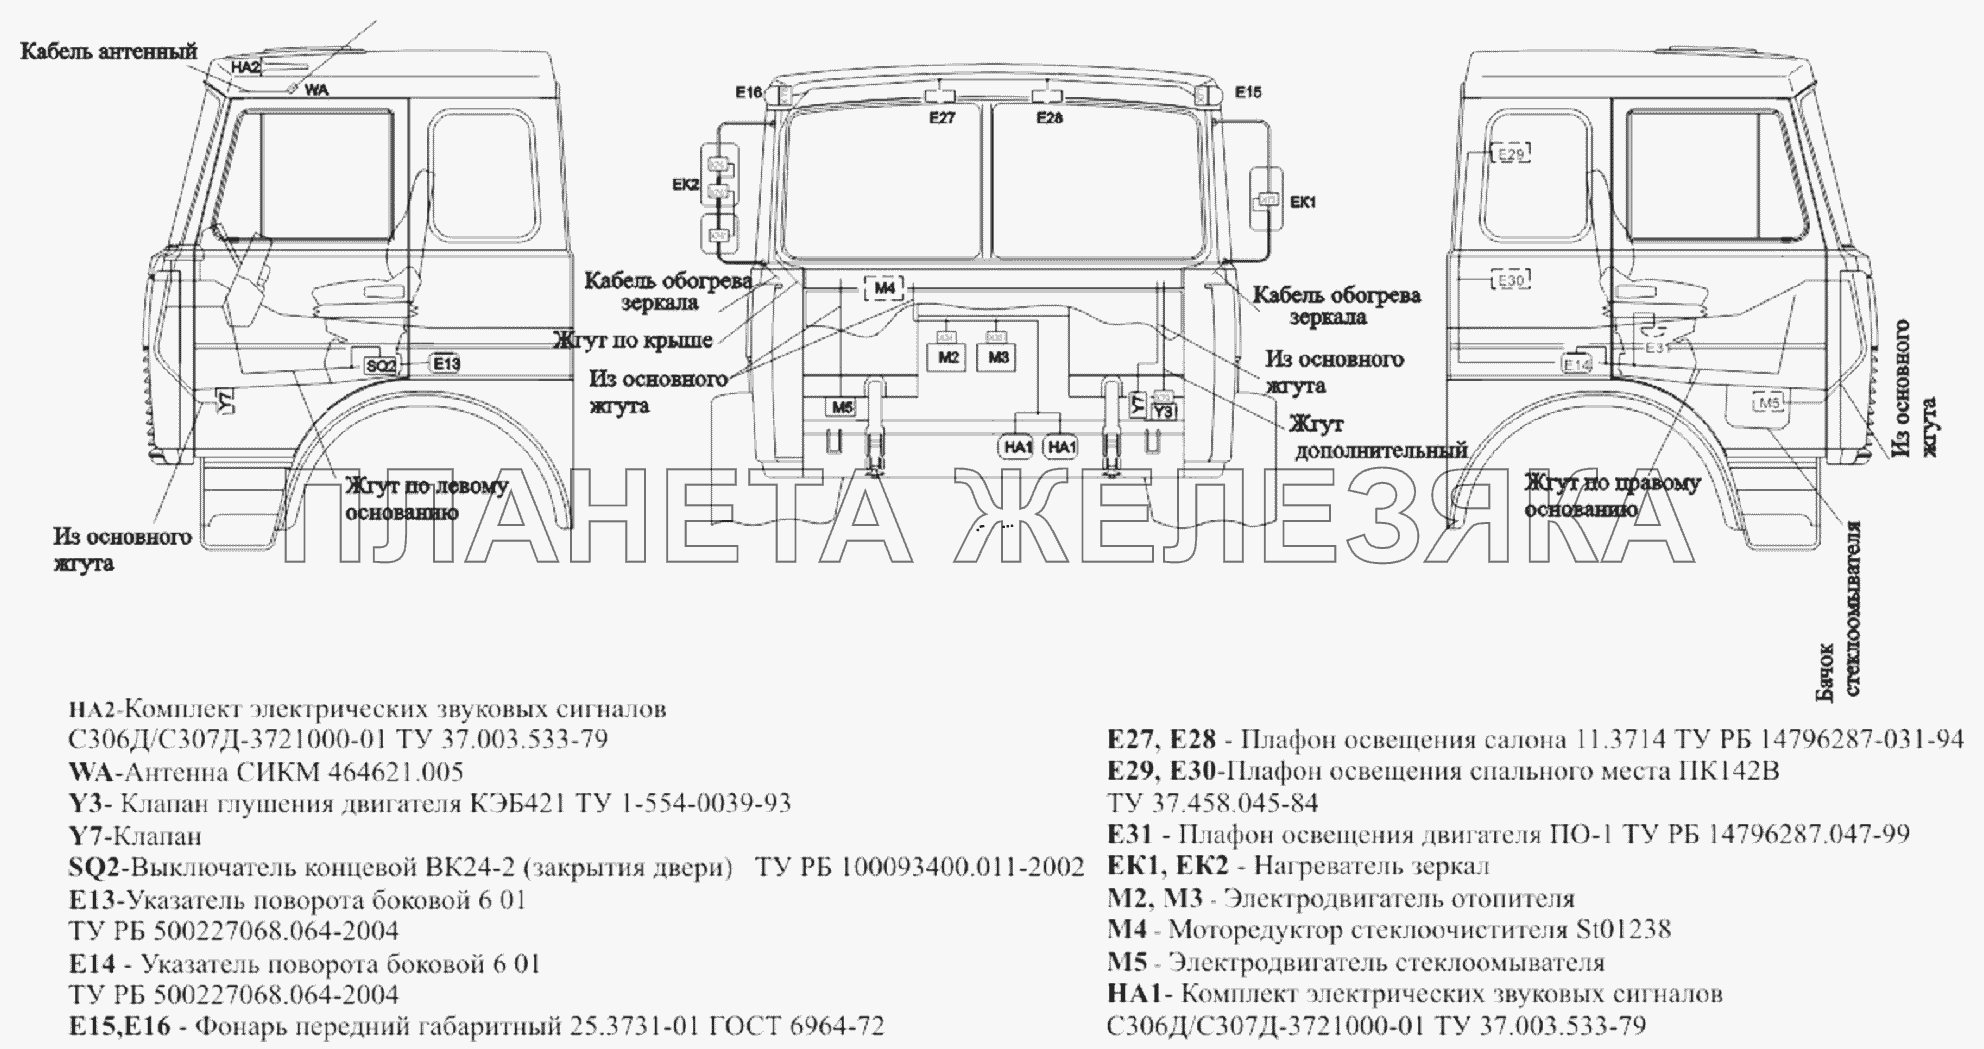 Расположение разъемов и элементов электрооборудования на большой кабине автомобилей МАЗ-651705